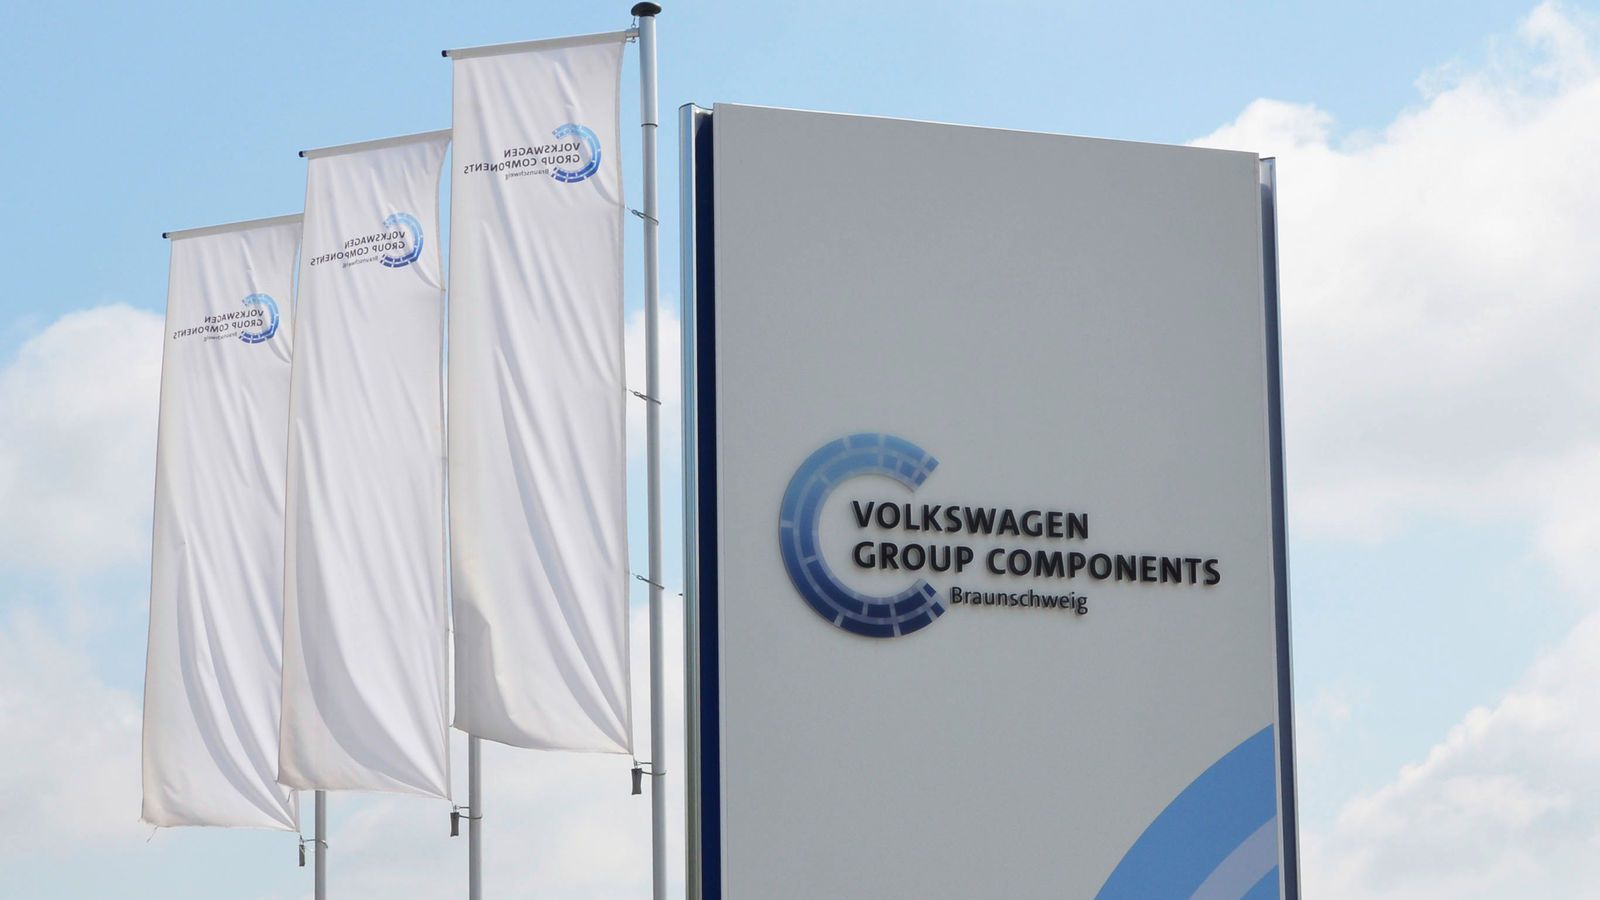 Volkswagen Group Components Braunschweig